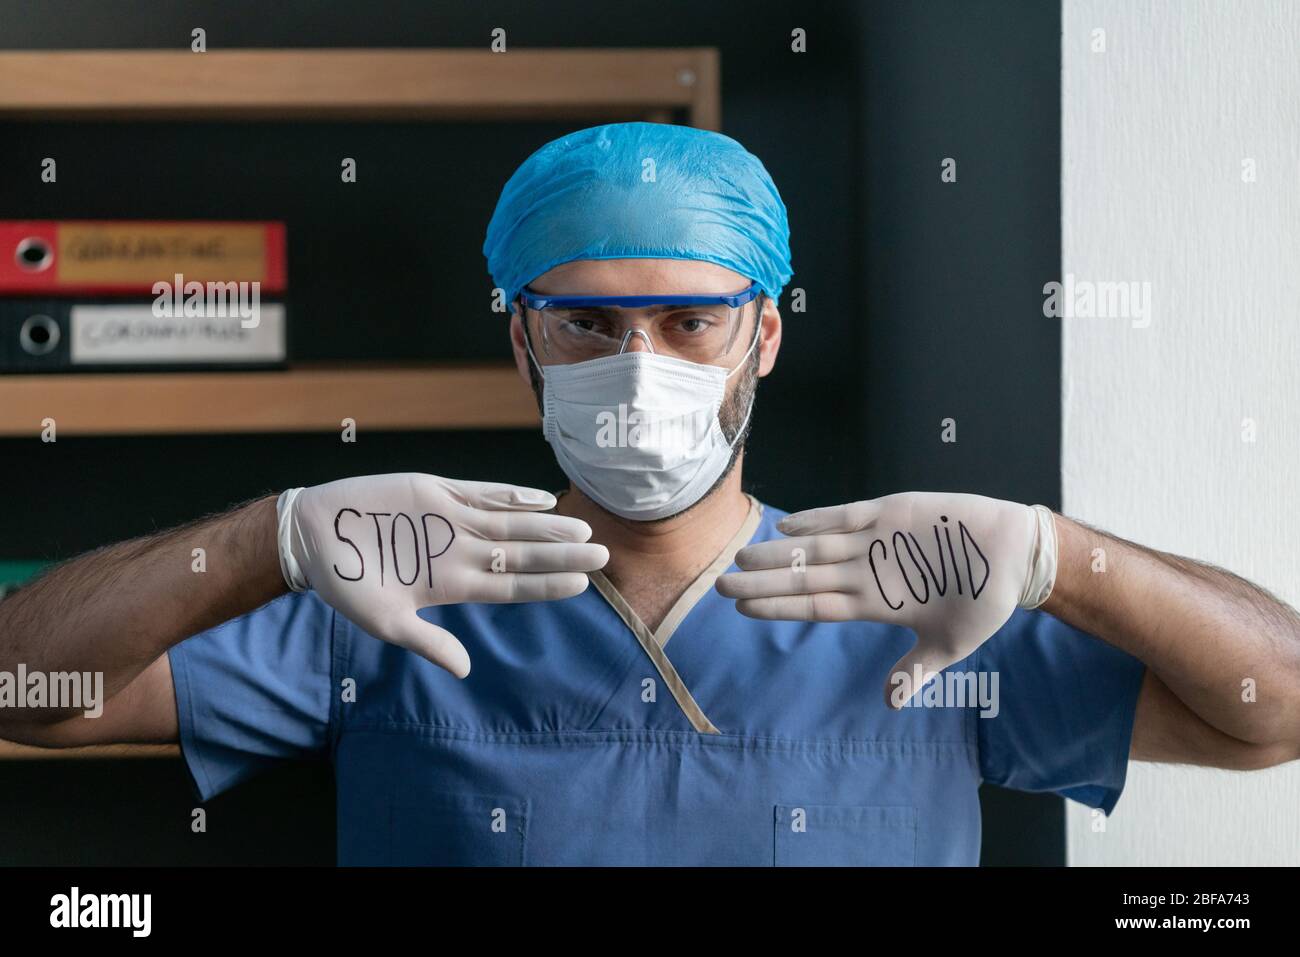 Mann In Blauer Medizinischer Uniform Zeigt Slogan, Covid Zu Stoppen Stockfoto